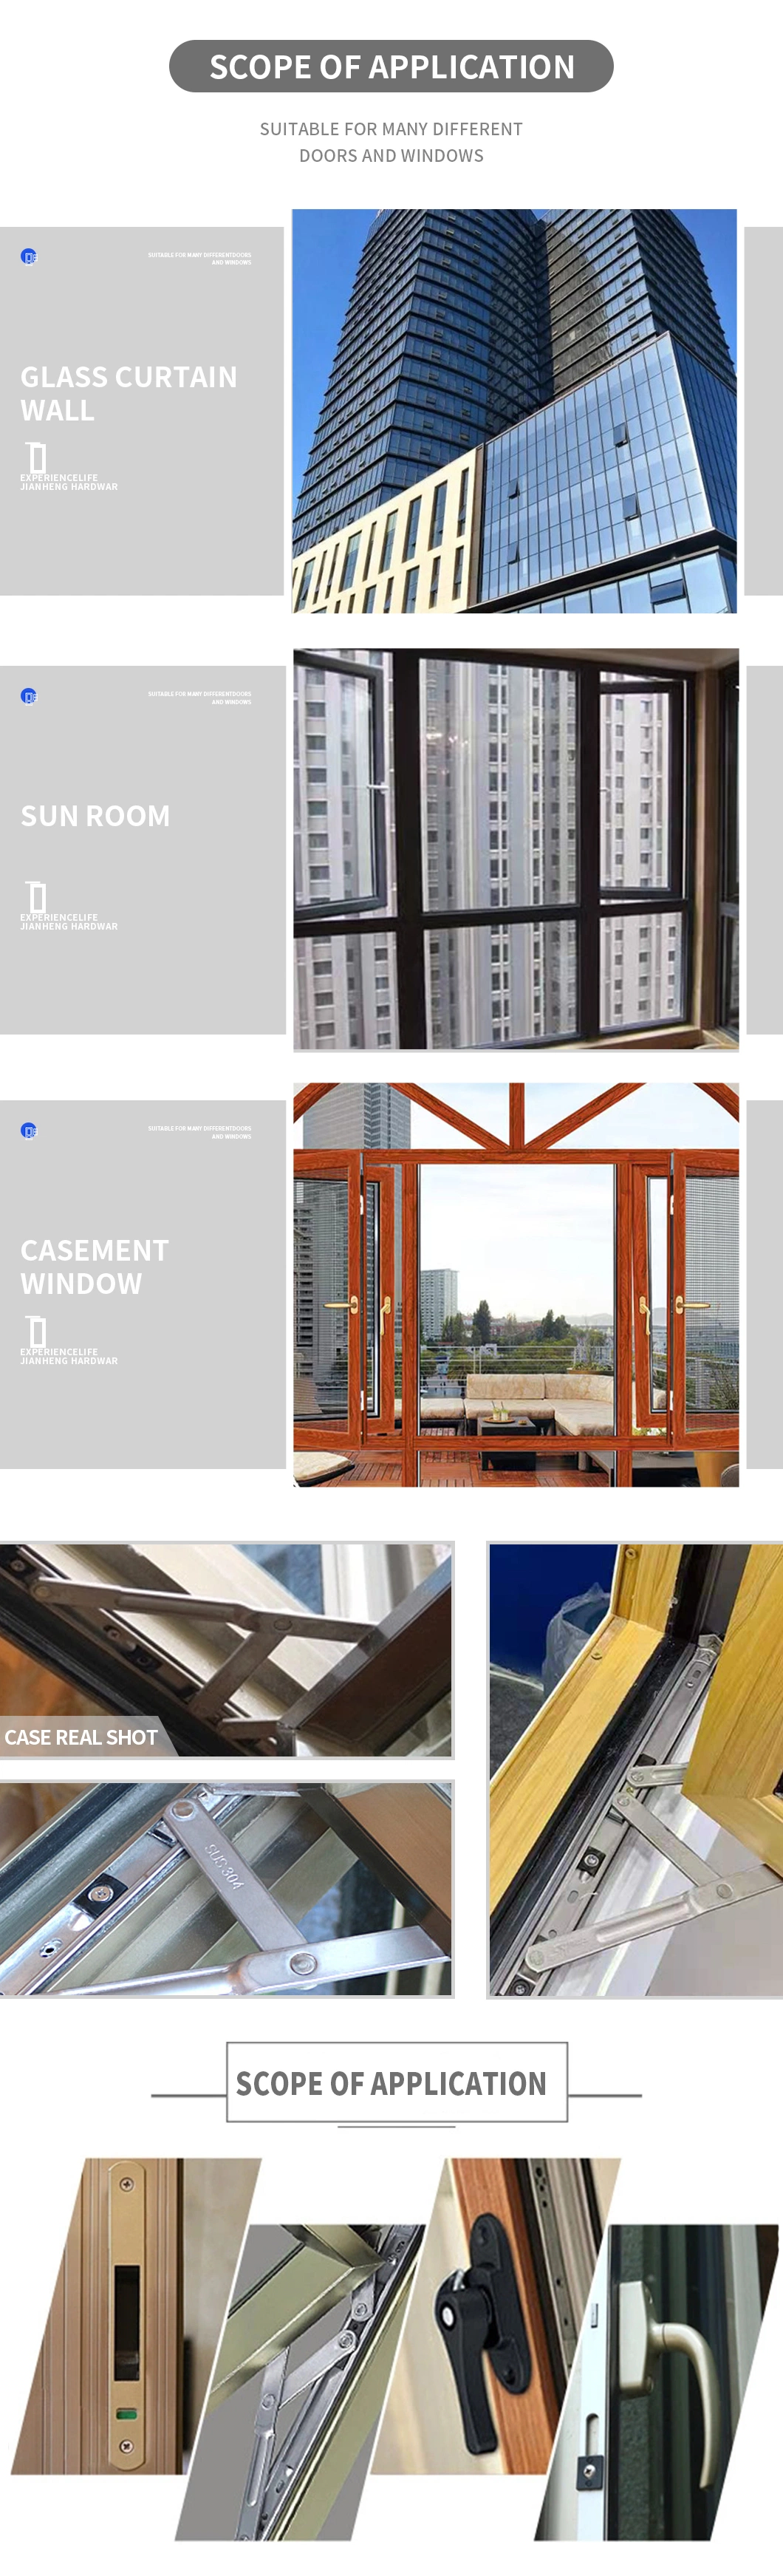 Door and Window Hardware Accessories Universal PVC Window Handle with Durable